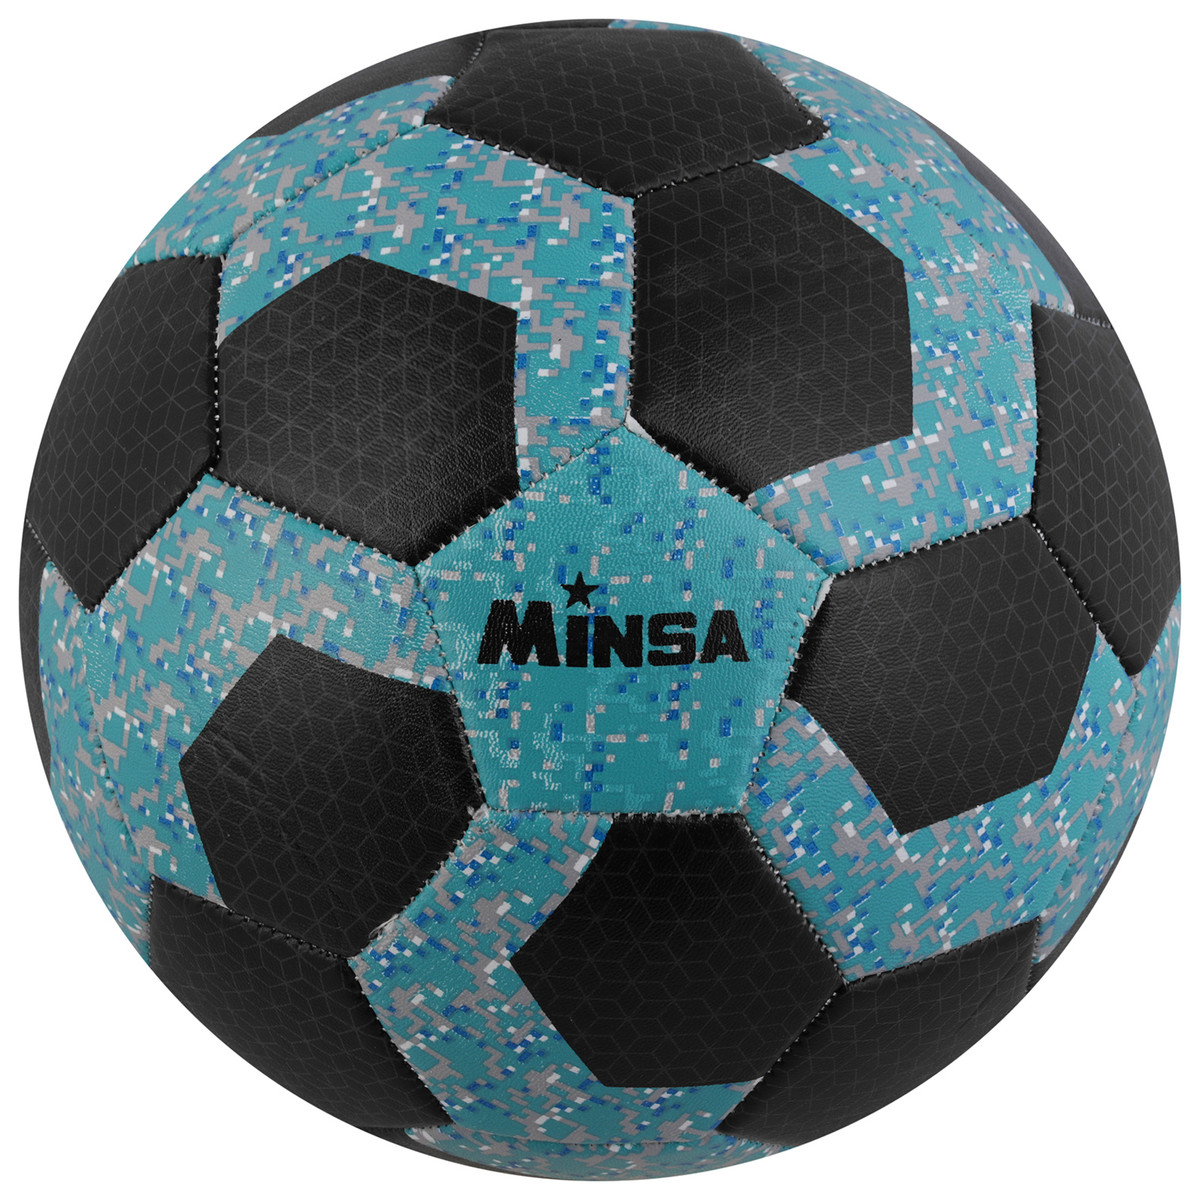 Мяч футбольный minsa, размер 5, 32 панели, pvc, бутиловая камера, 260 г, MINSA